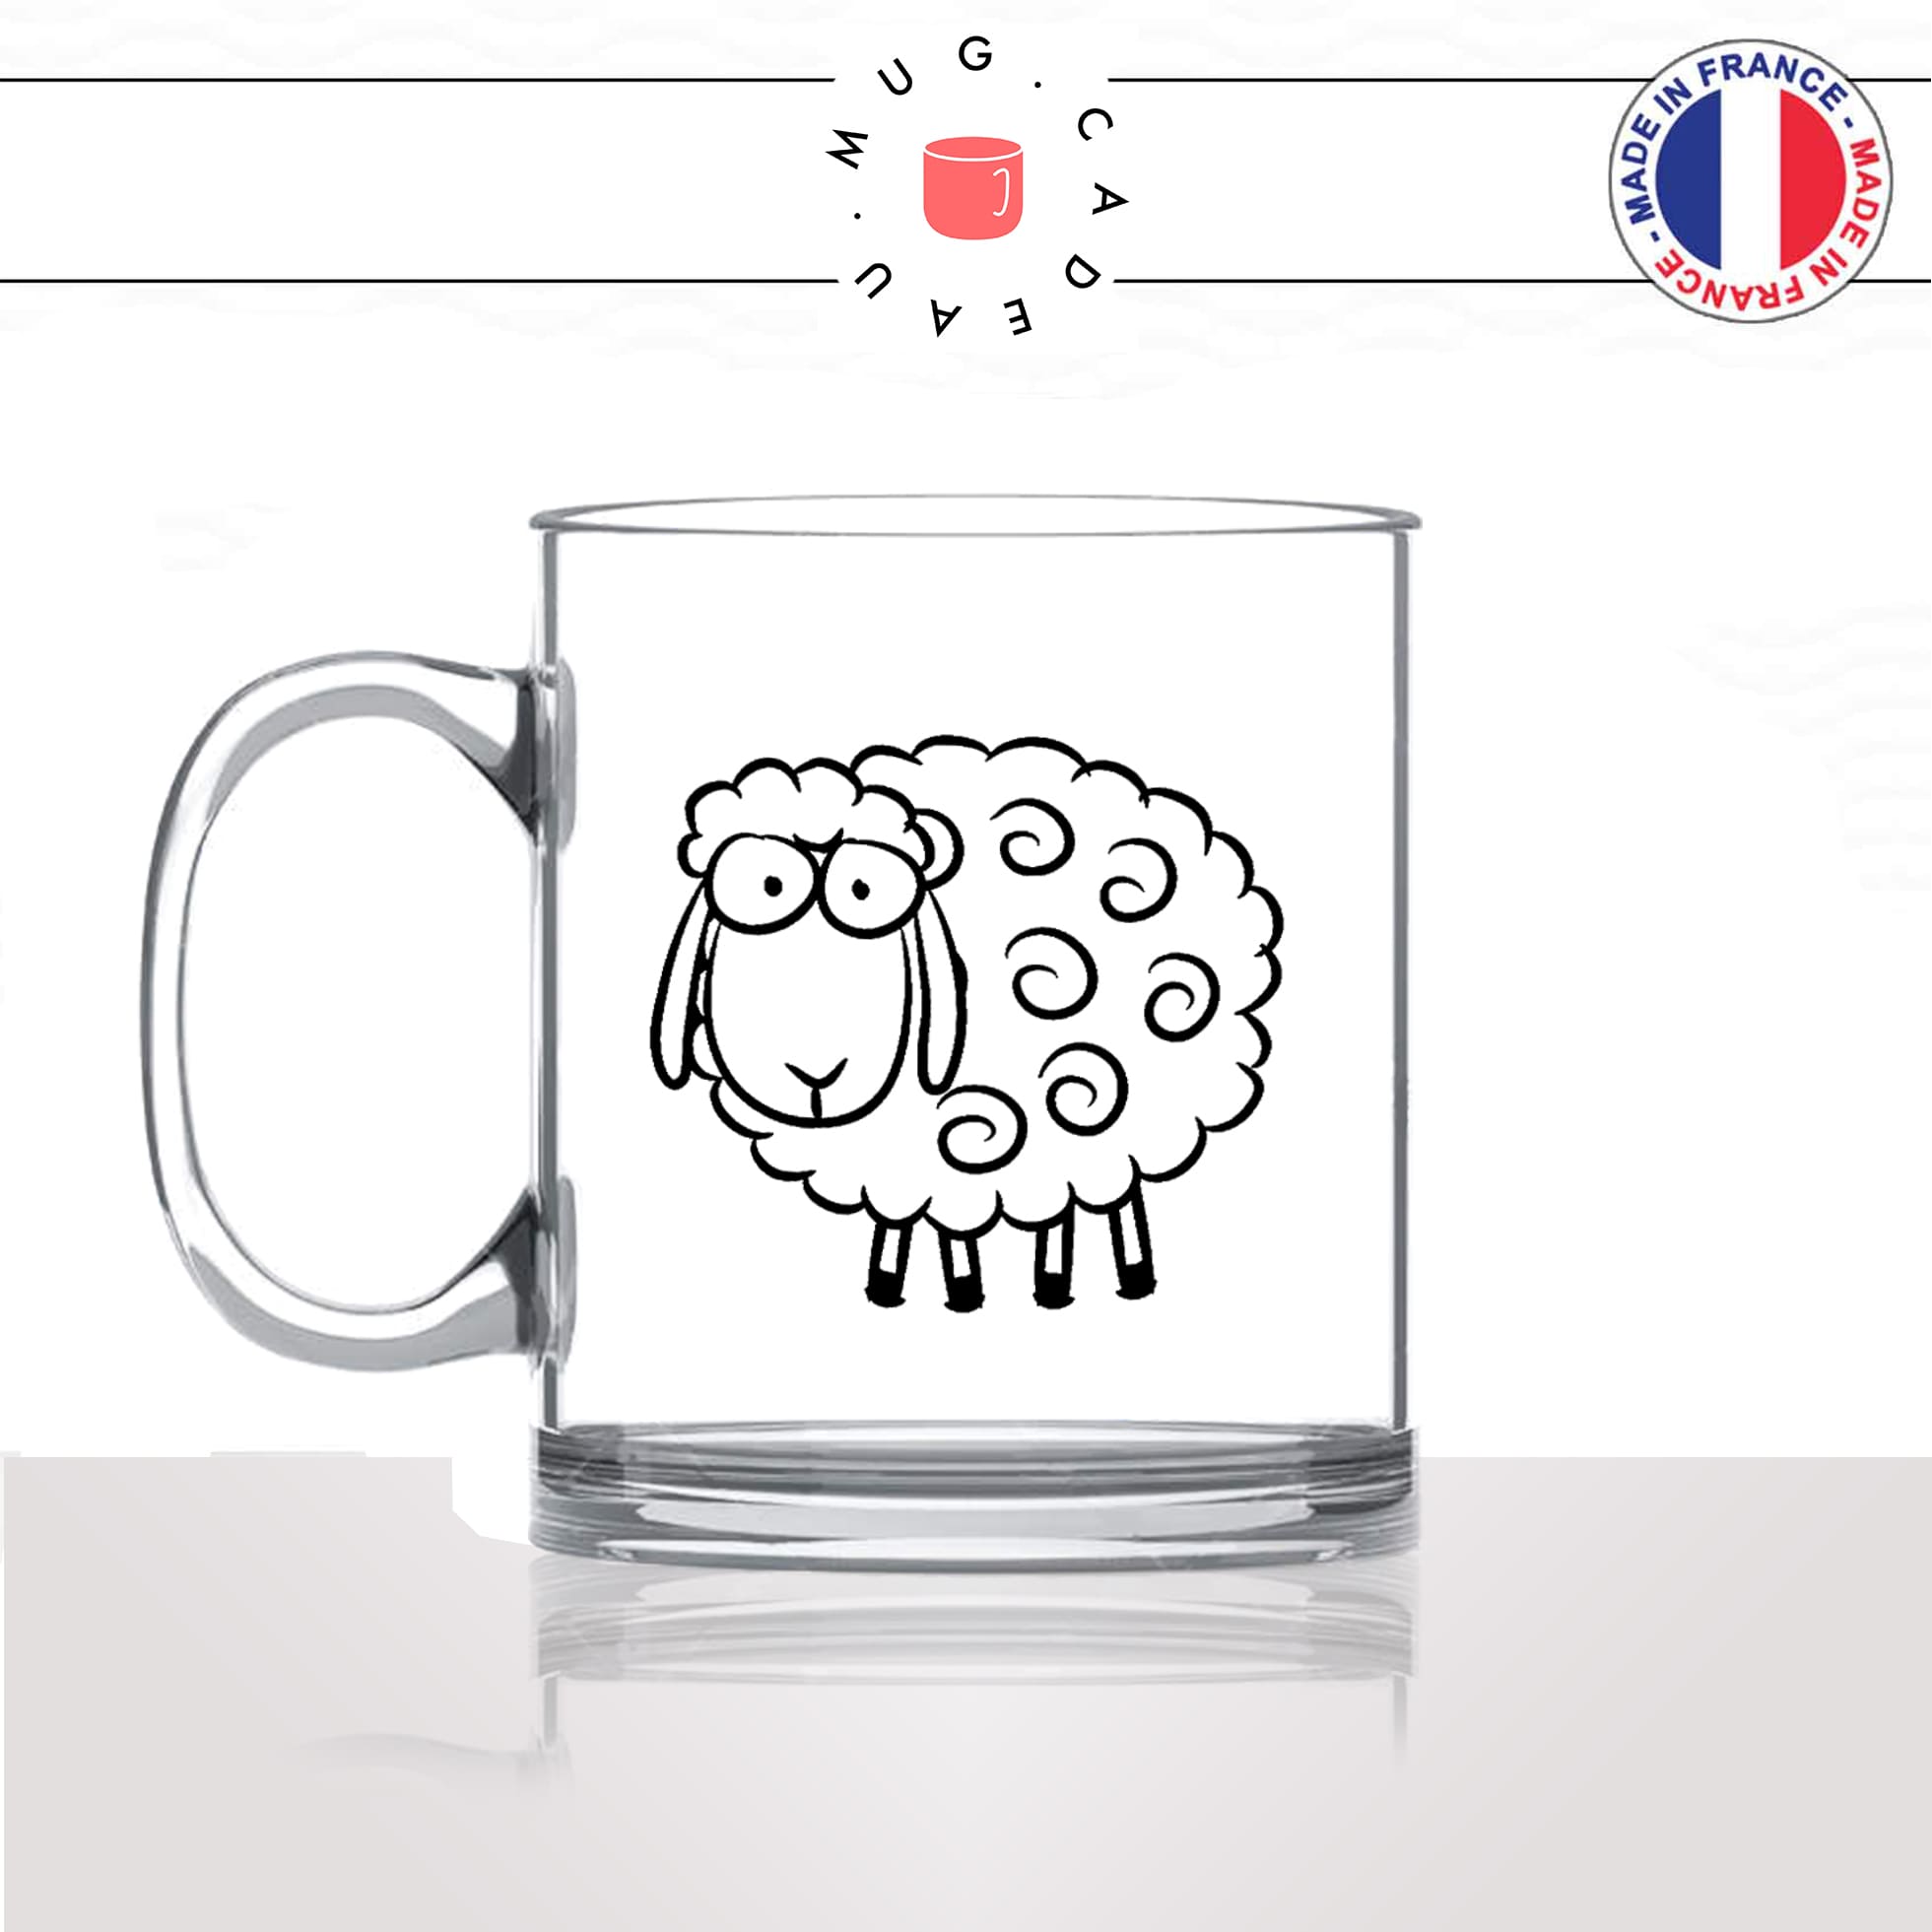 mug-tasse-en-verre-transparent-glass-mouton-animal-suiveur-social-panurge-politique-gilet-jaune-humour-fun-idée-cadeau-originale-cool